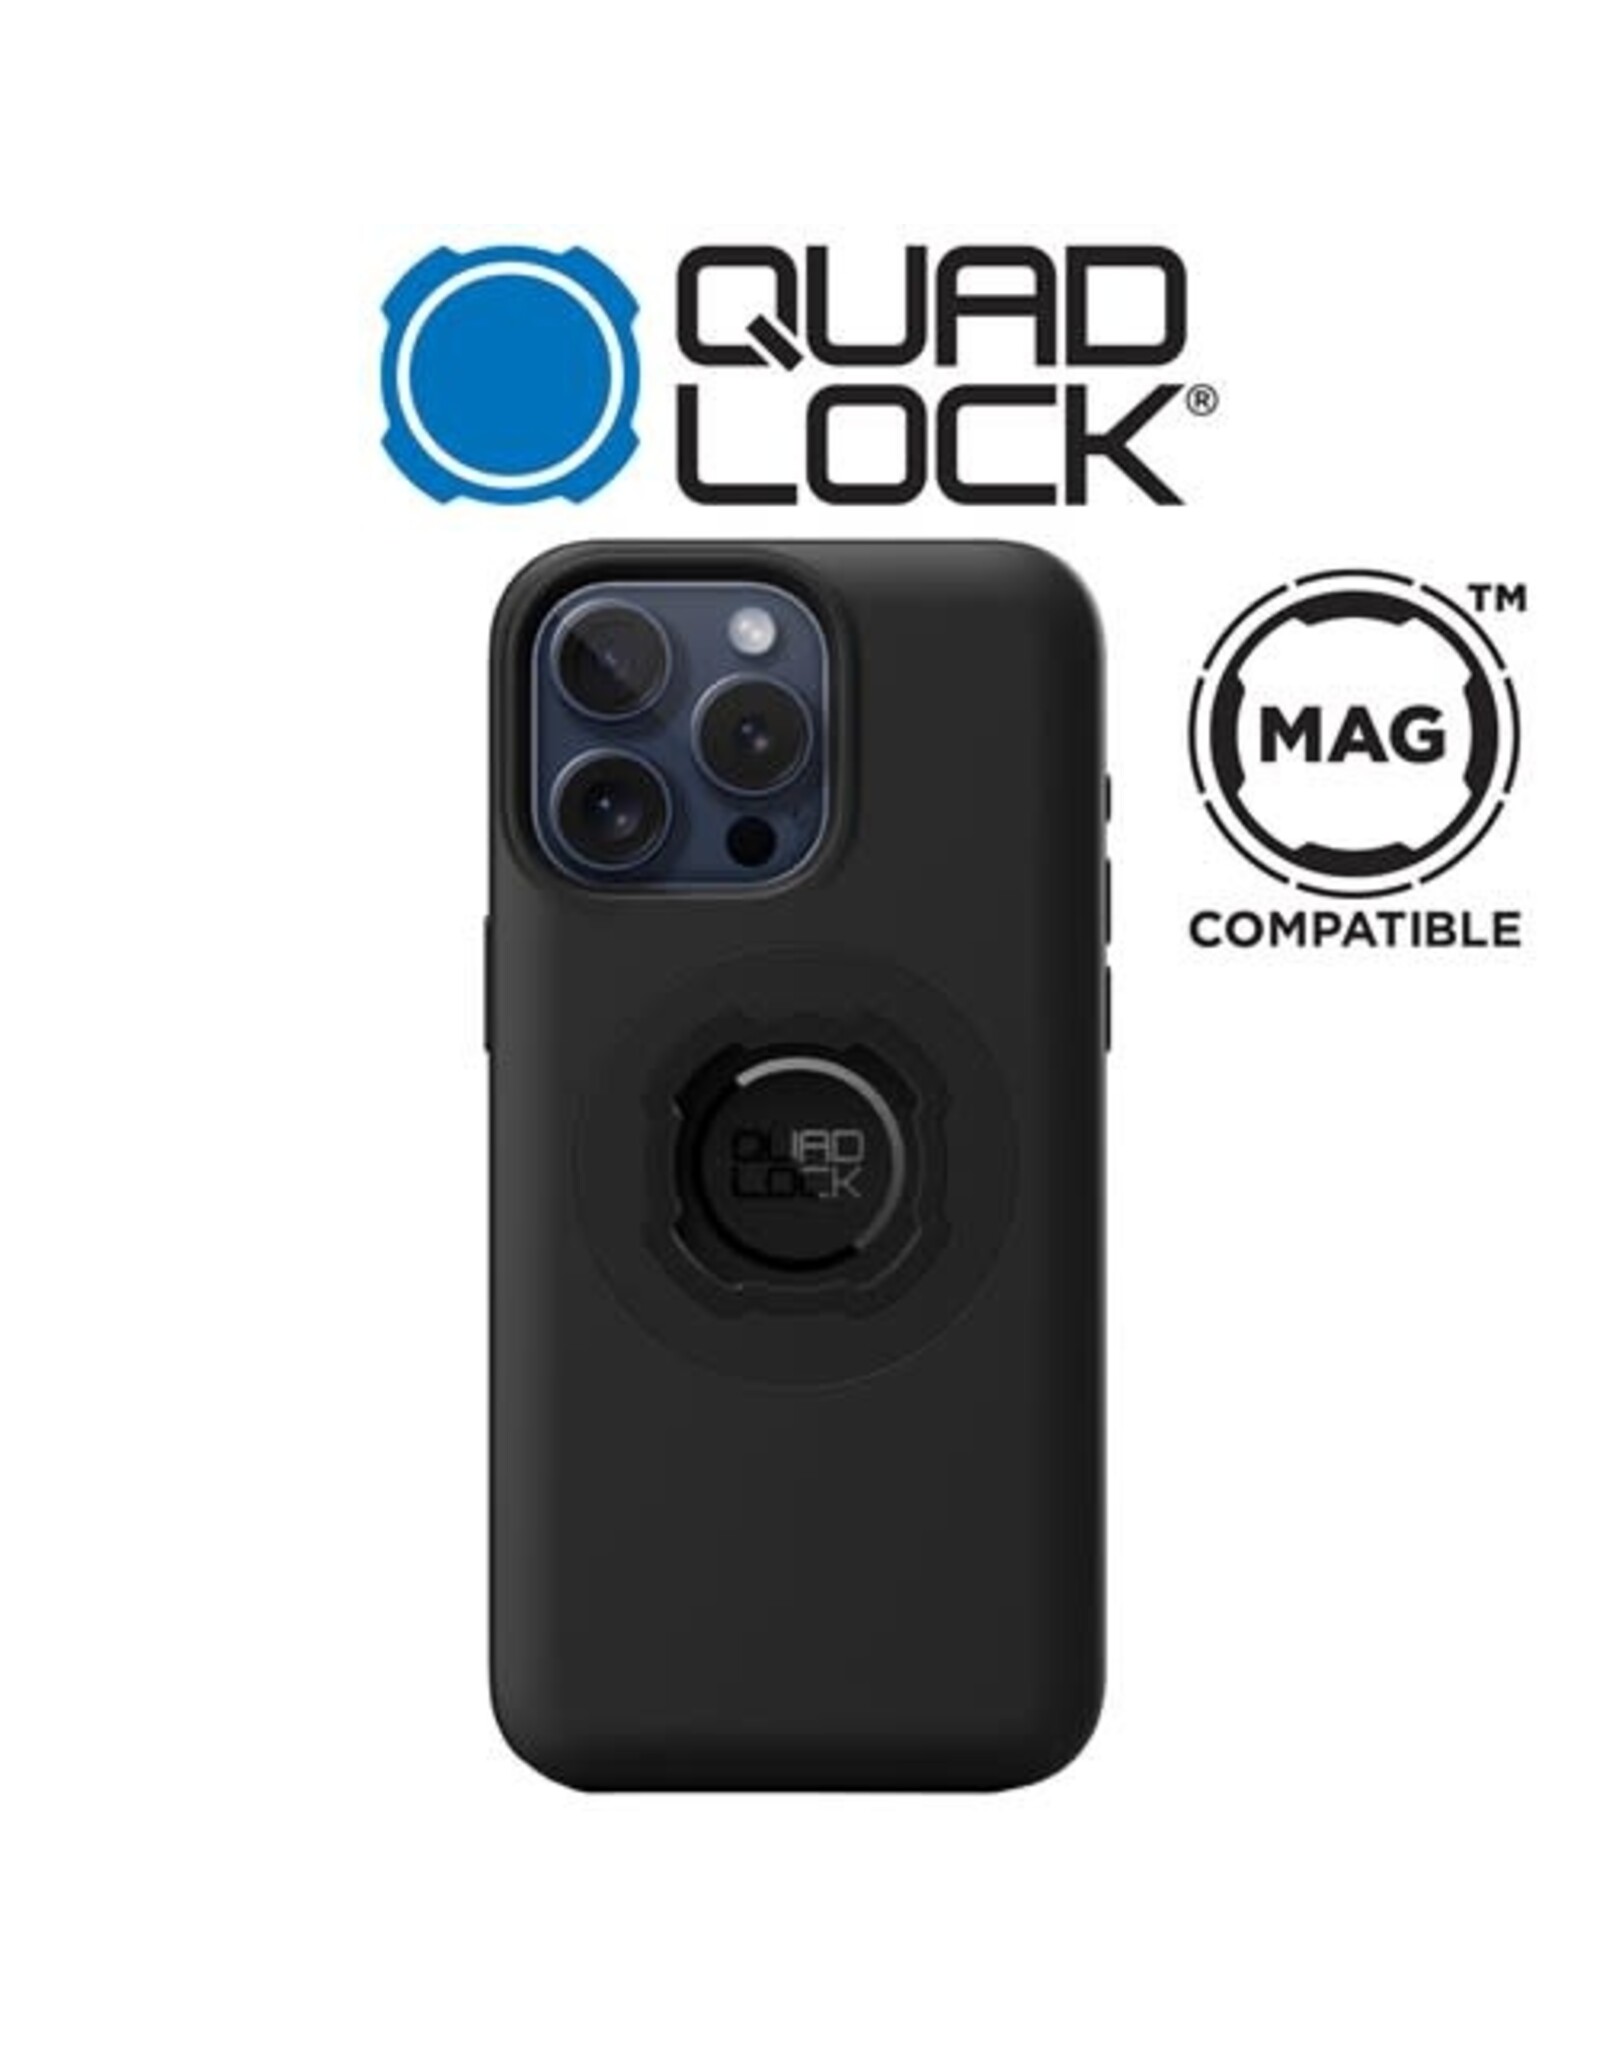 QUAD LOCK QUAD LOCK MAG FOR iPHONE 15 PRO MAX 6.7" PHONE CASE